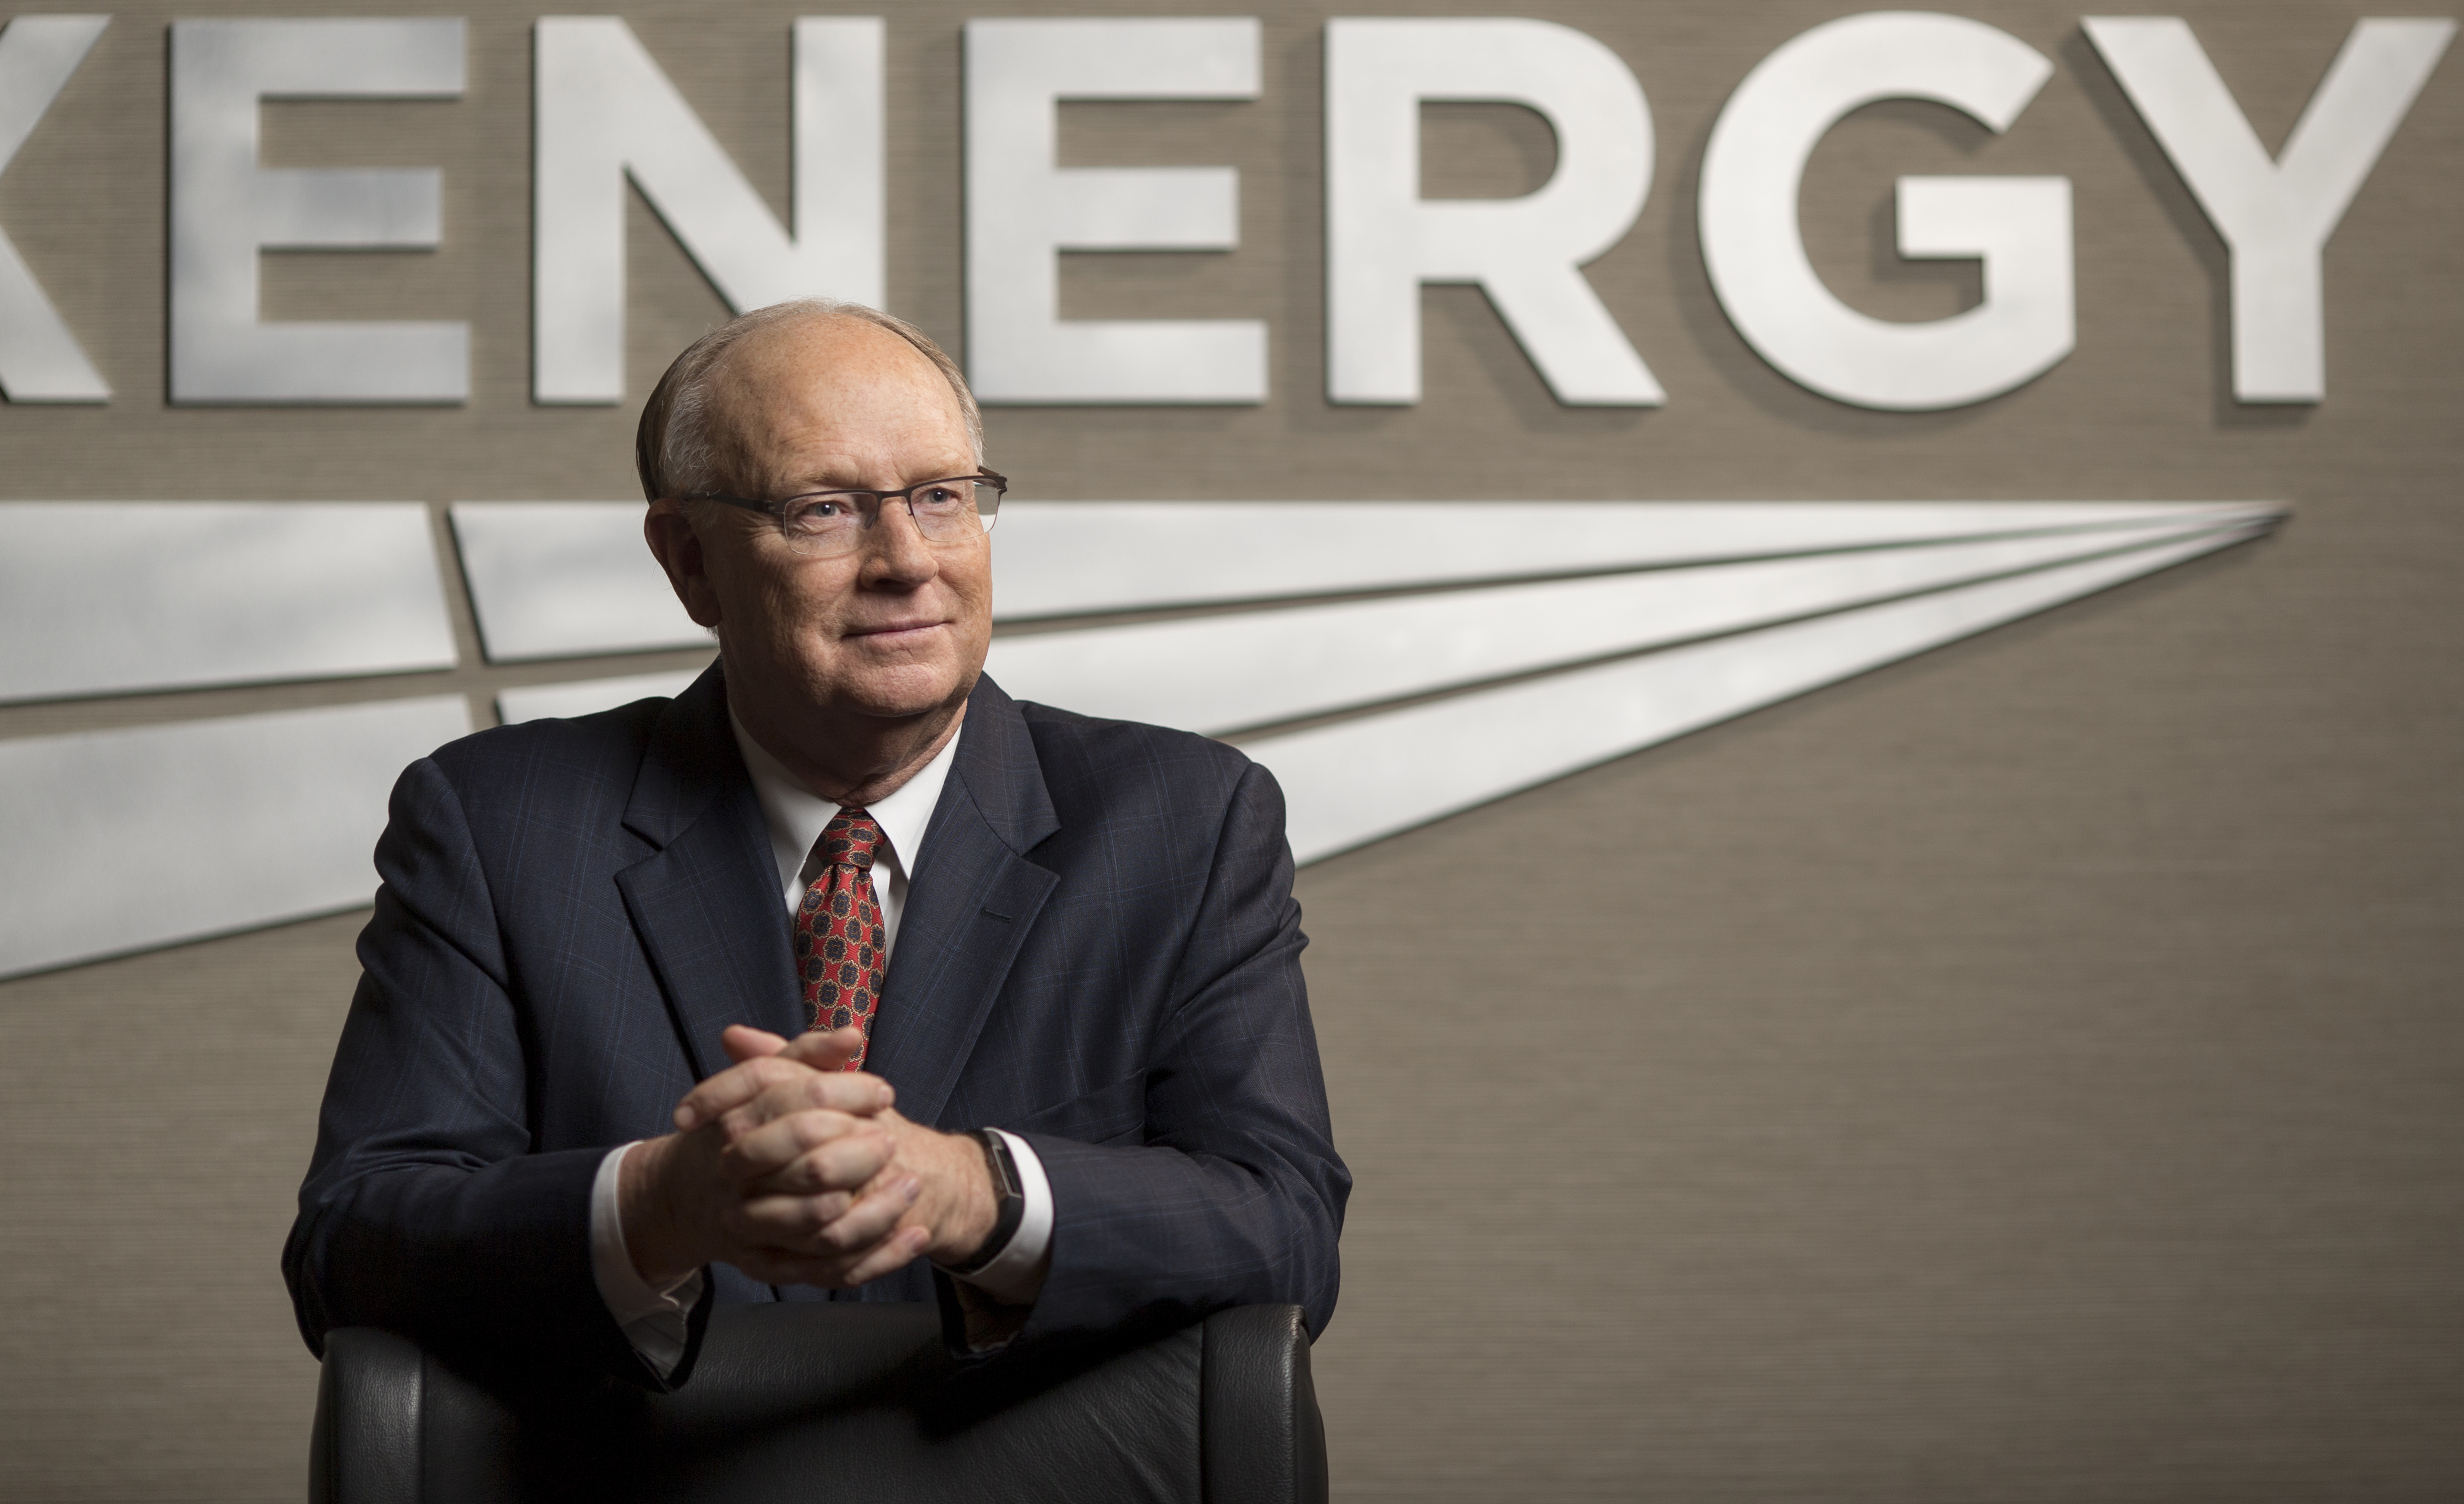 Devon Energy leader explains Permian Basin focus - Oklahoma Energy Today